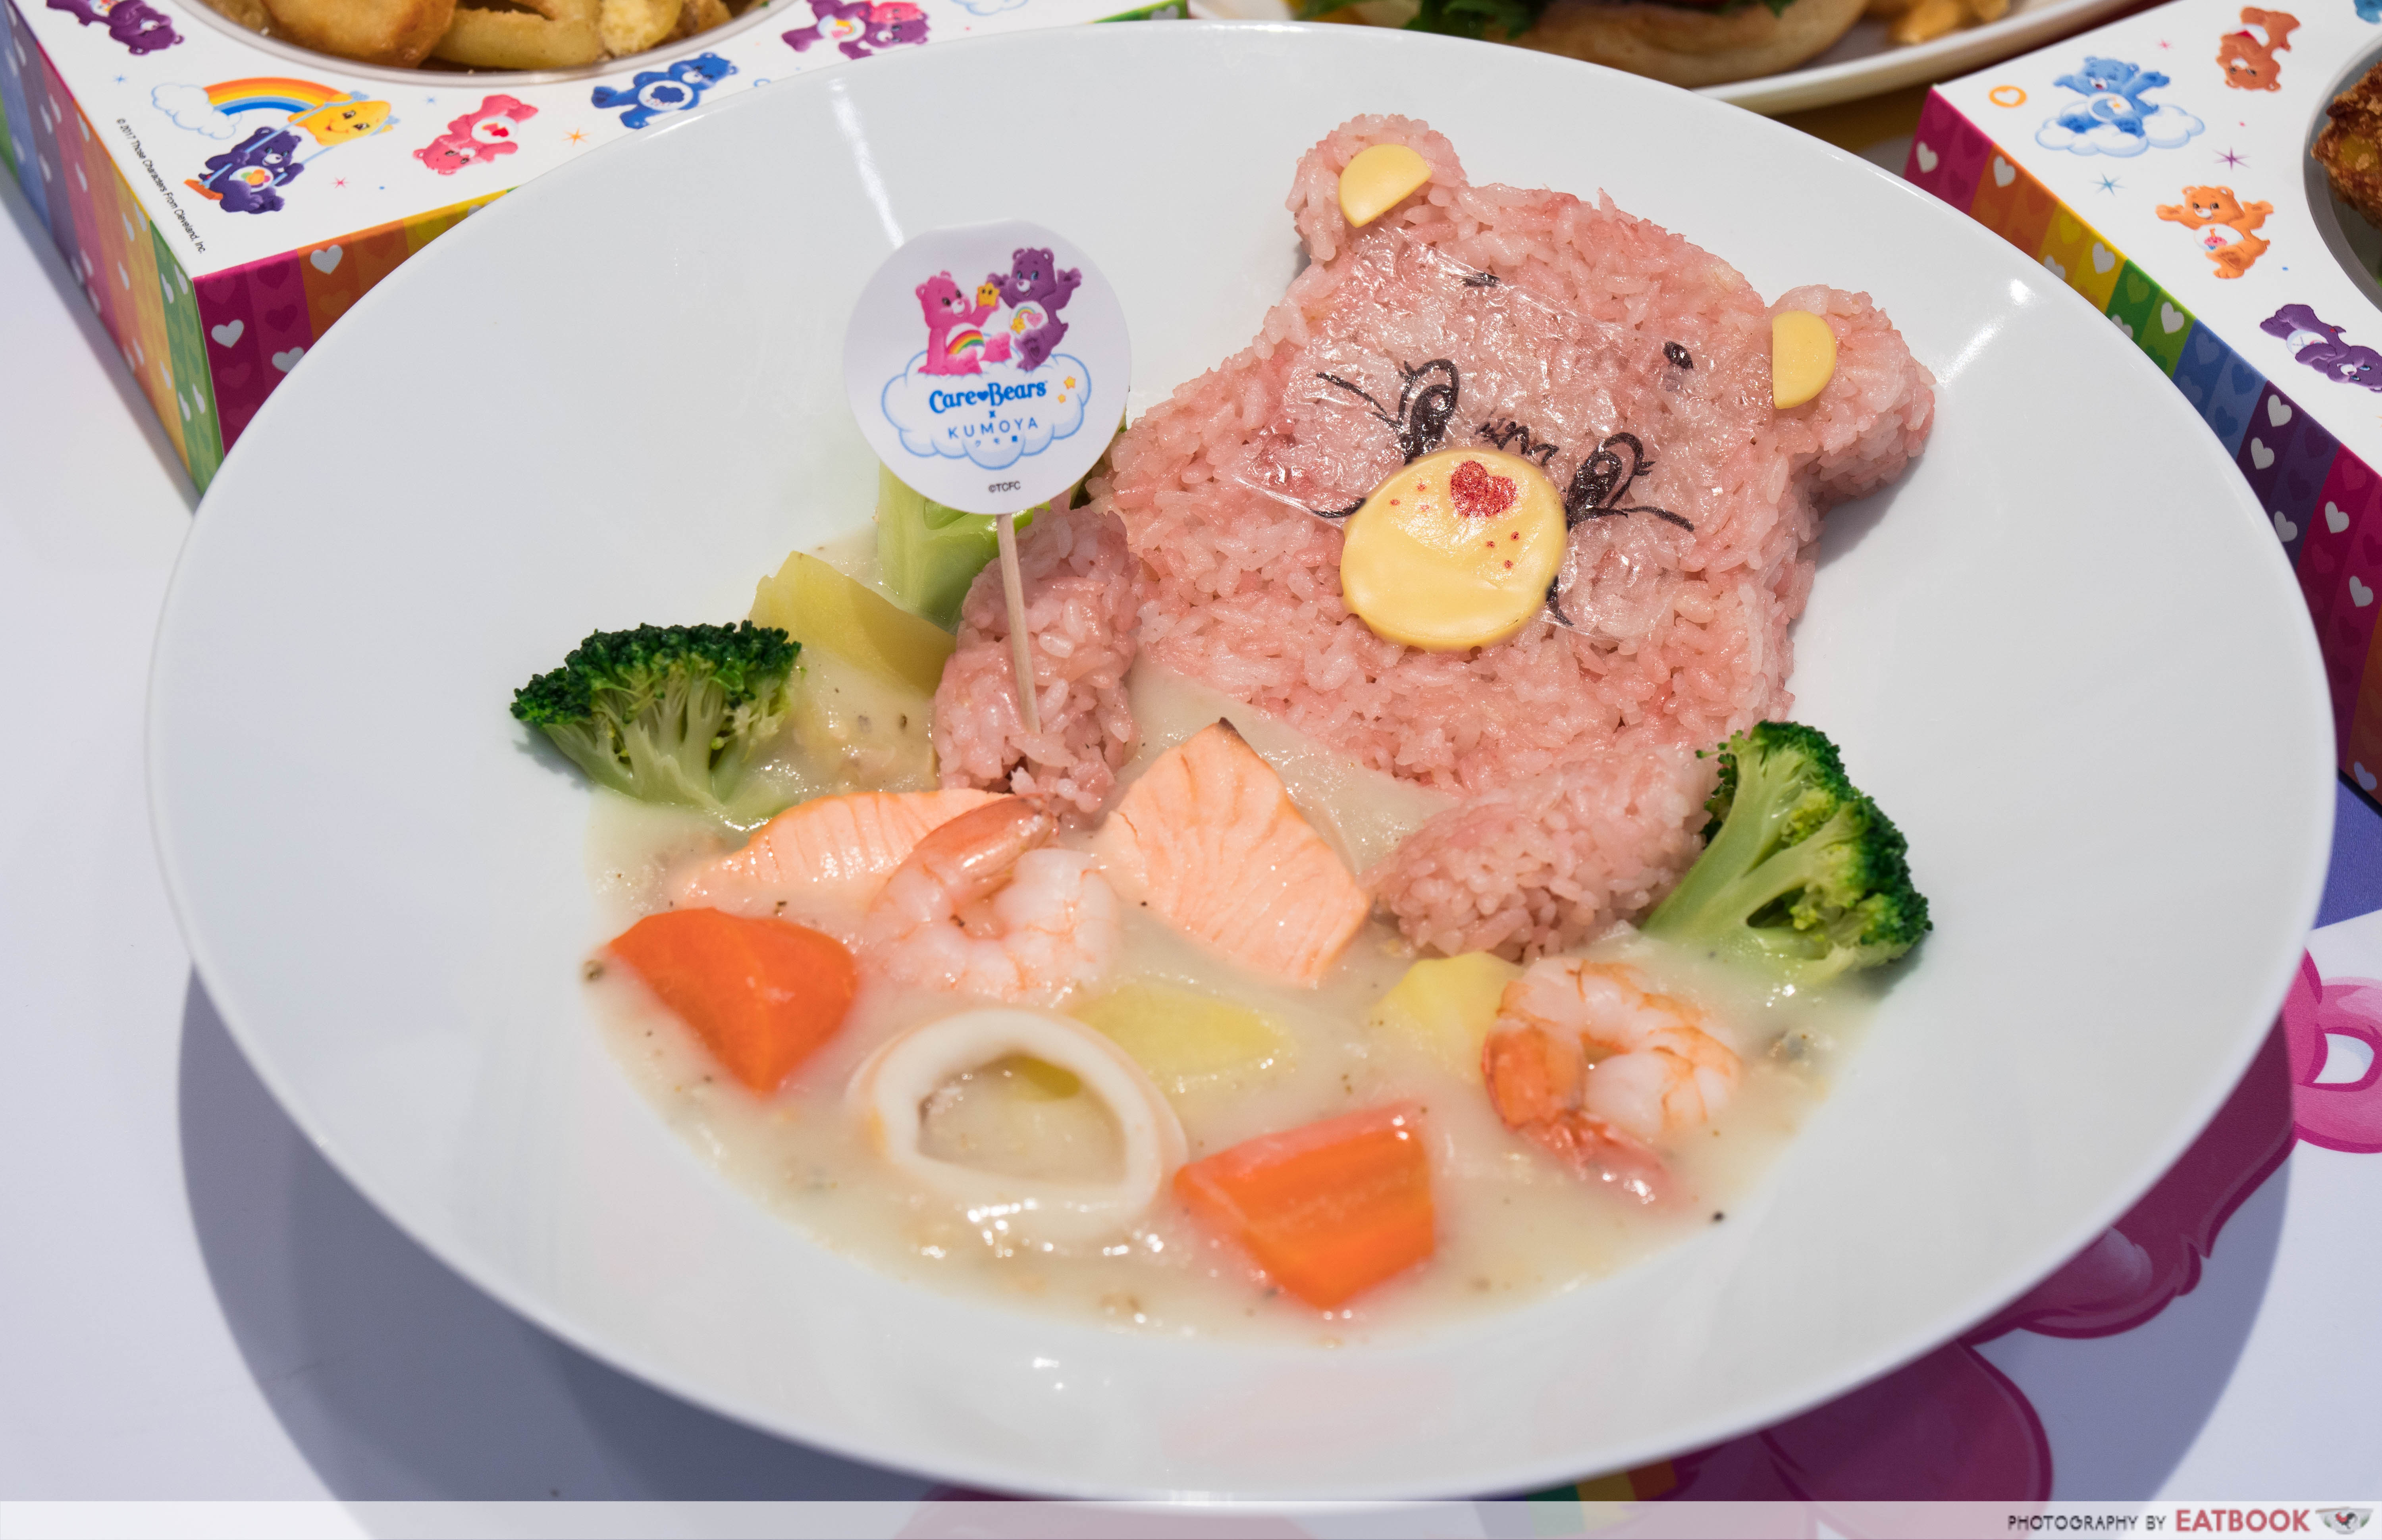 Care Bears Cafe - seafood chowder